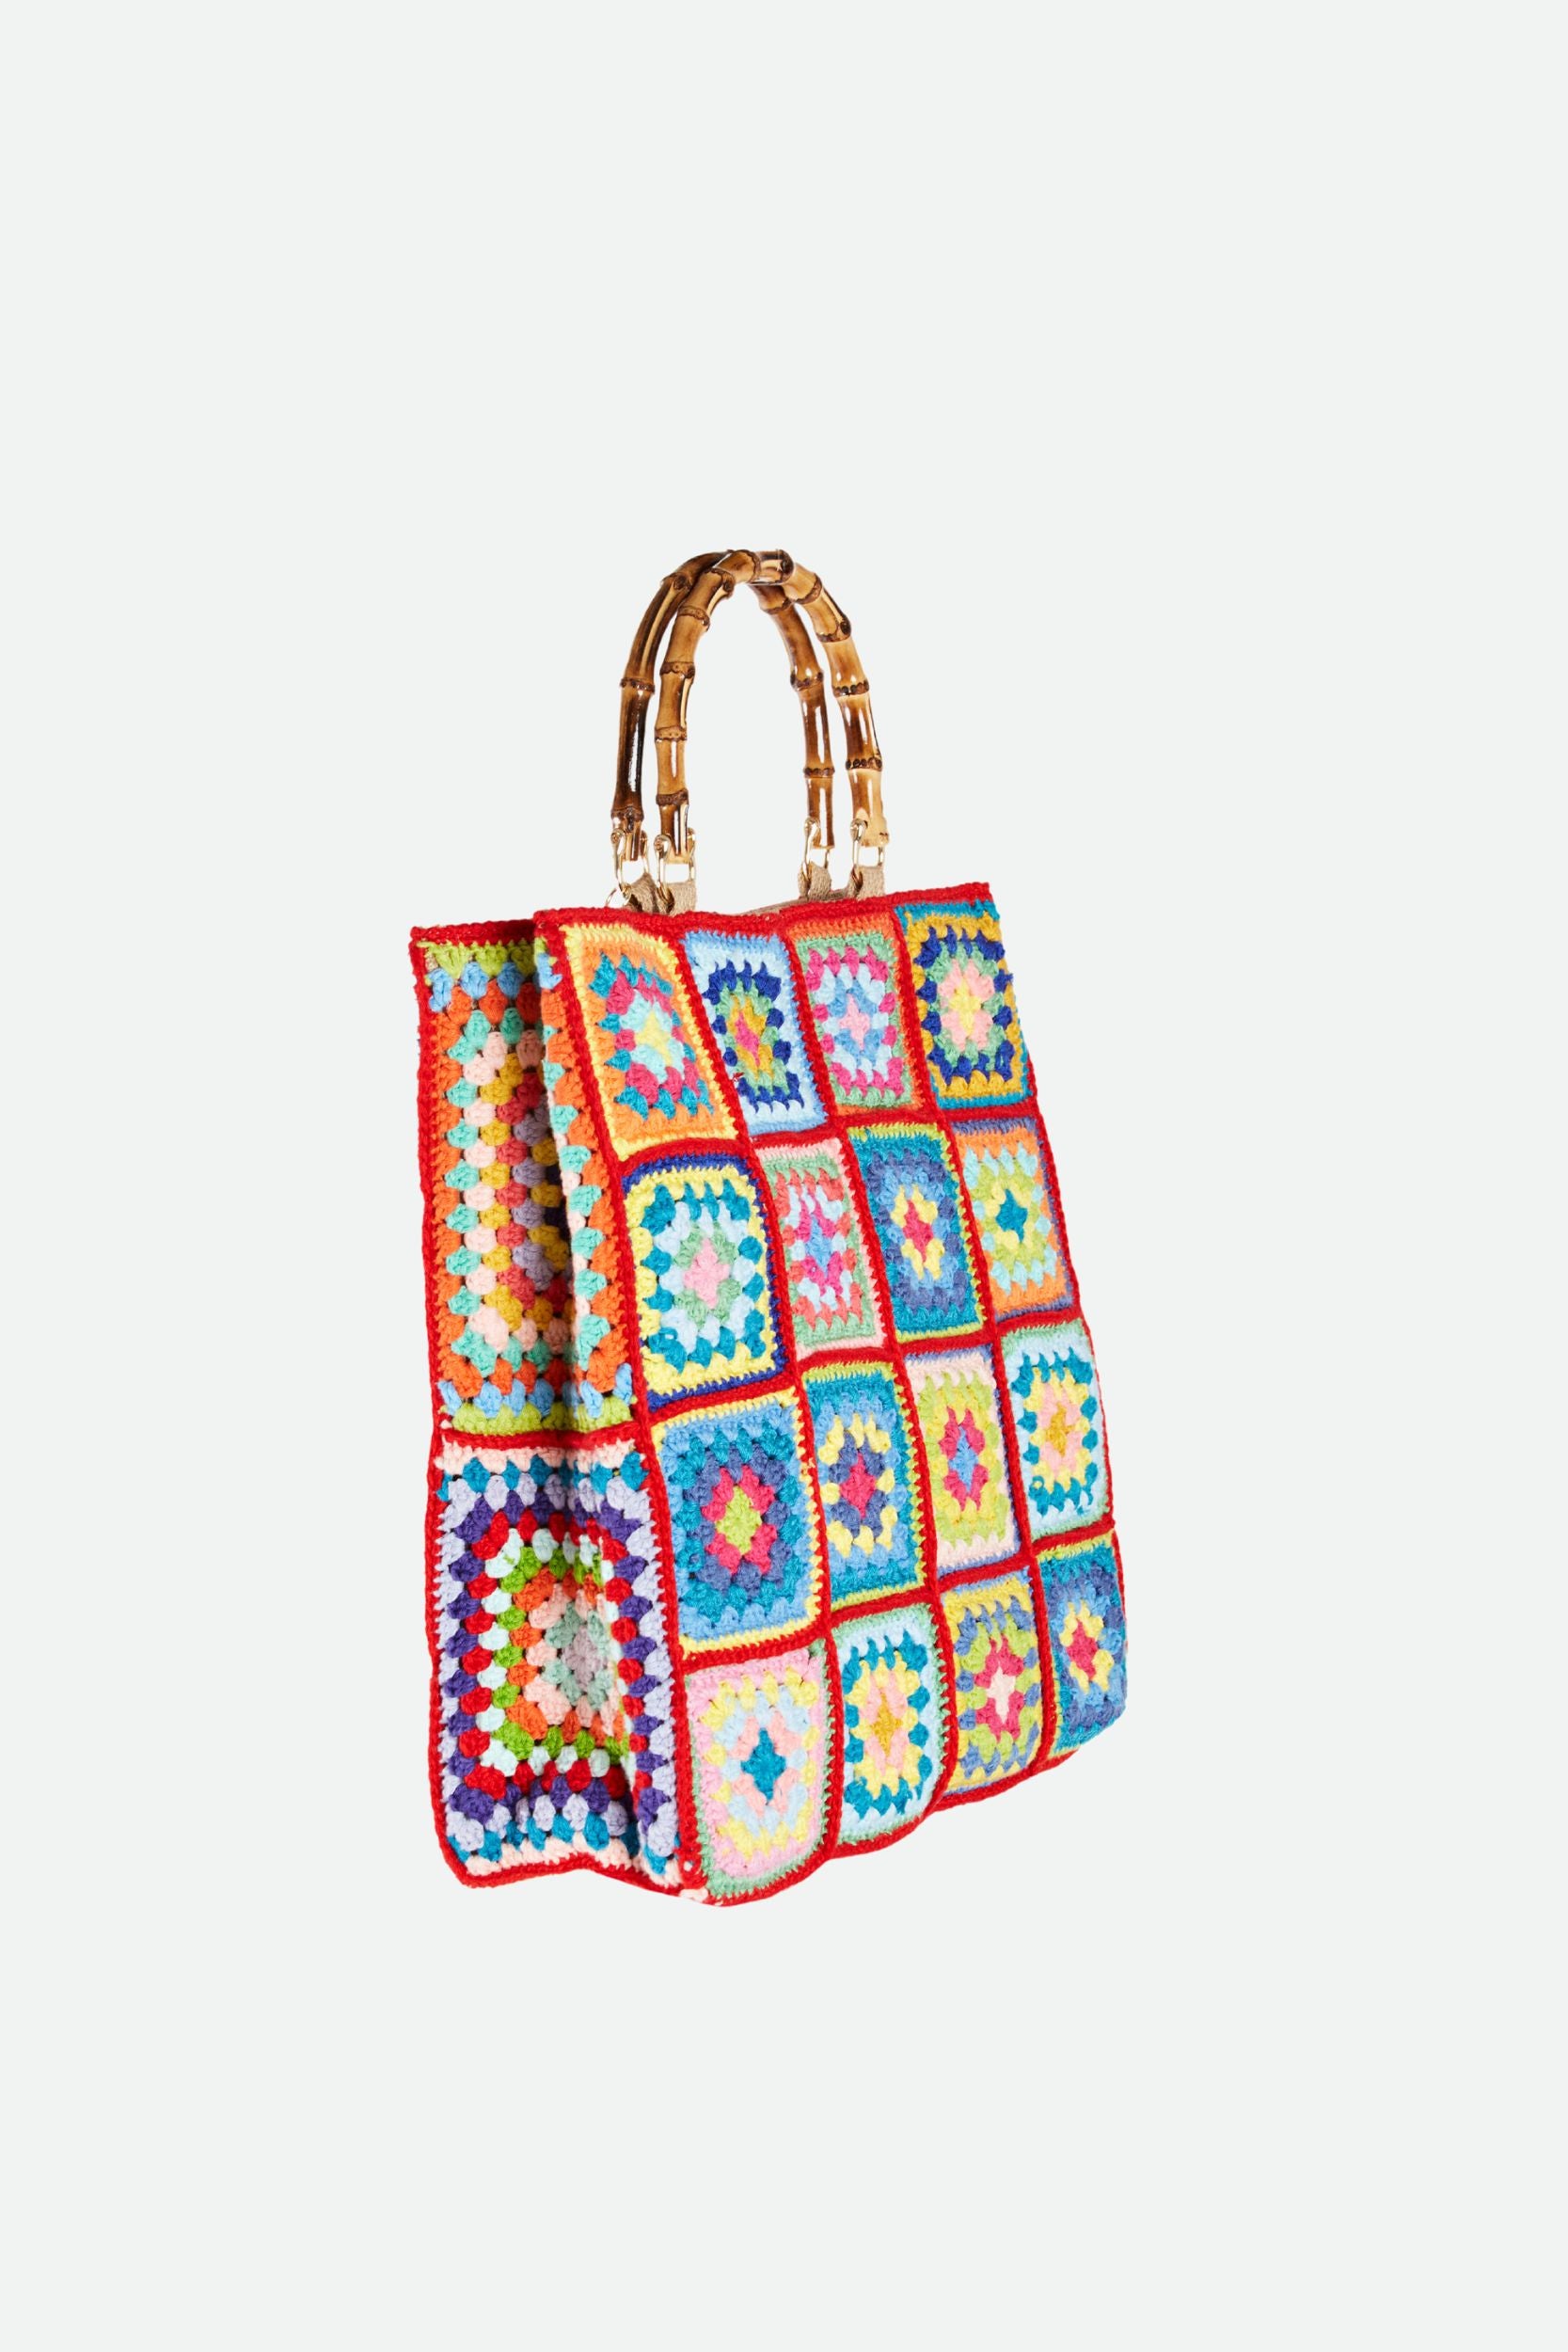 La Milanesa Medium Red Crochet Bag